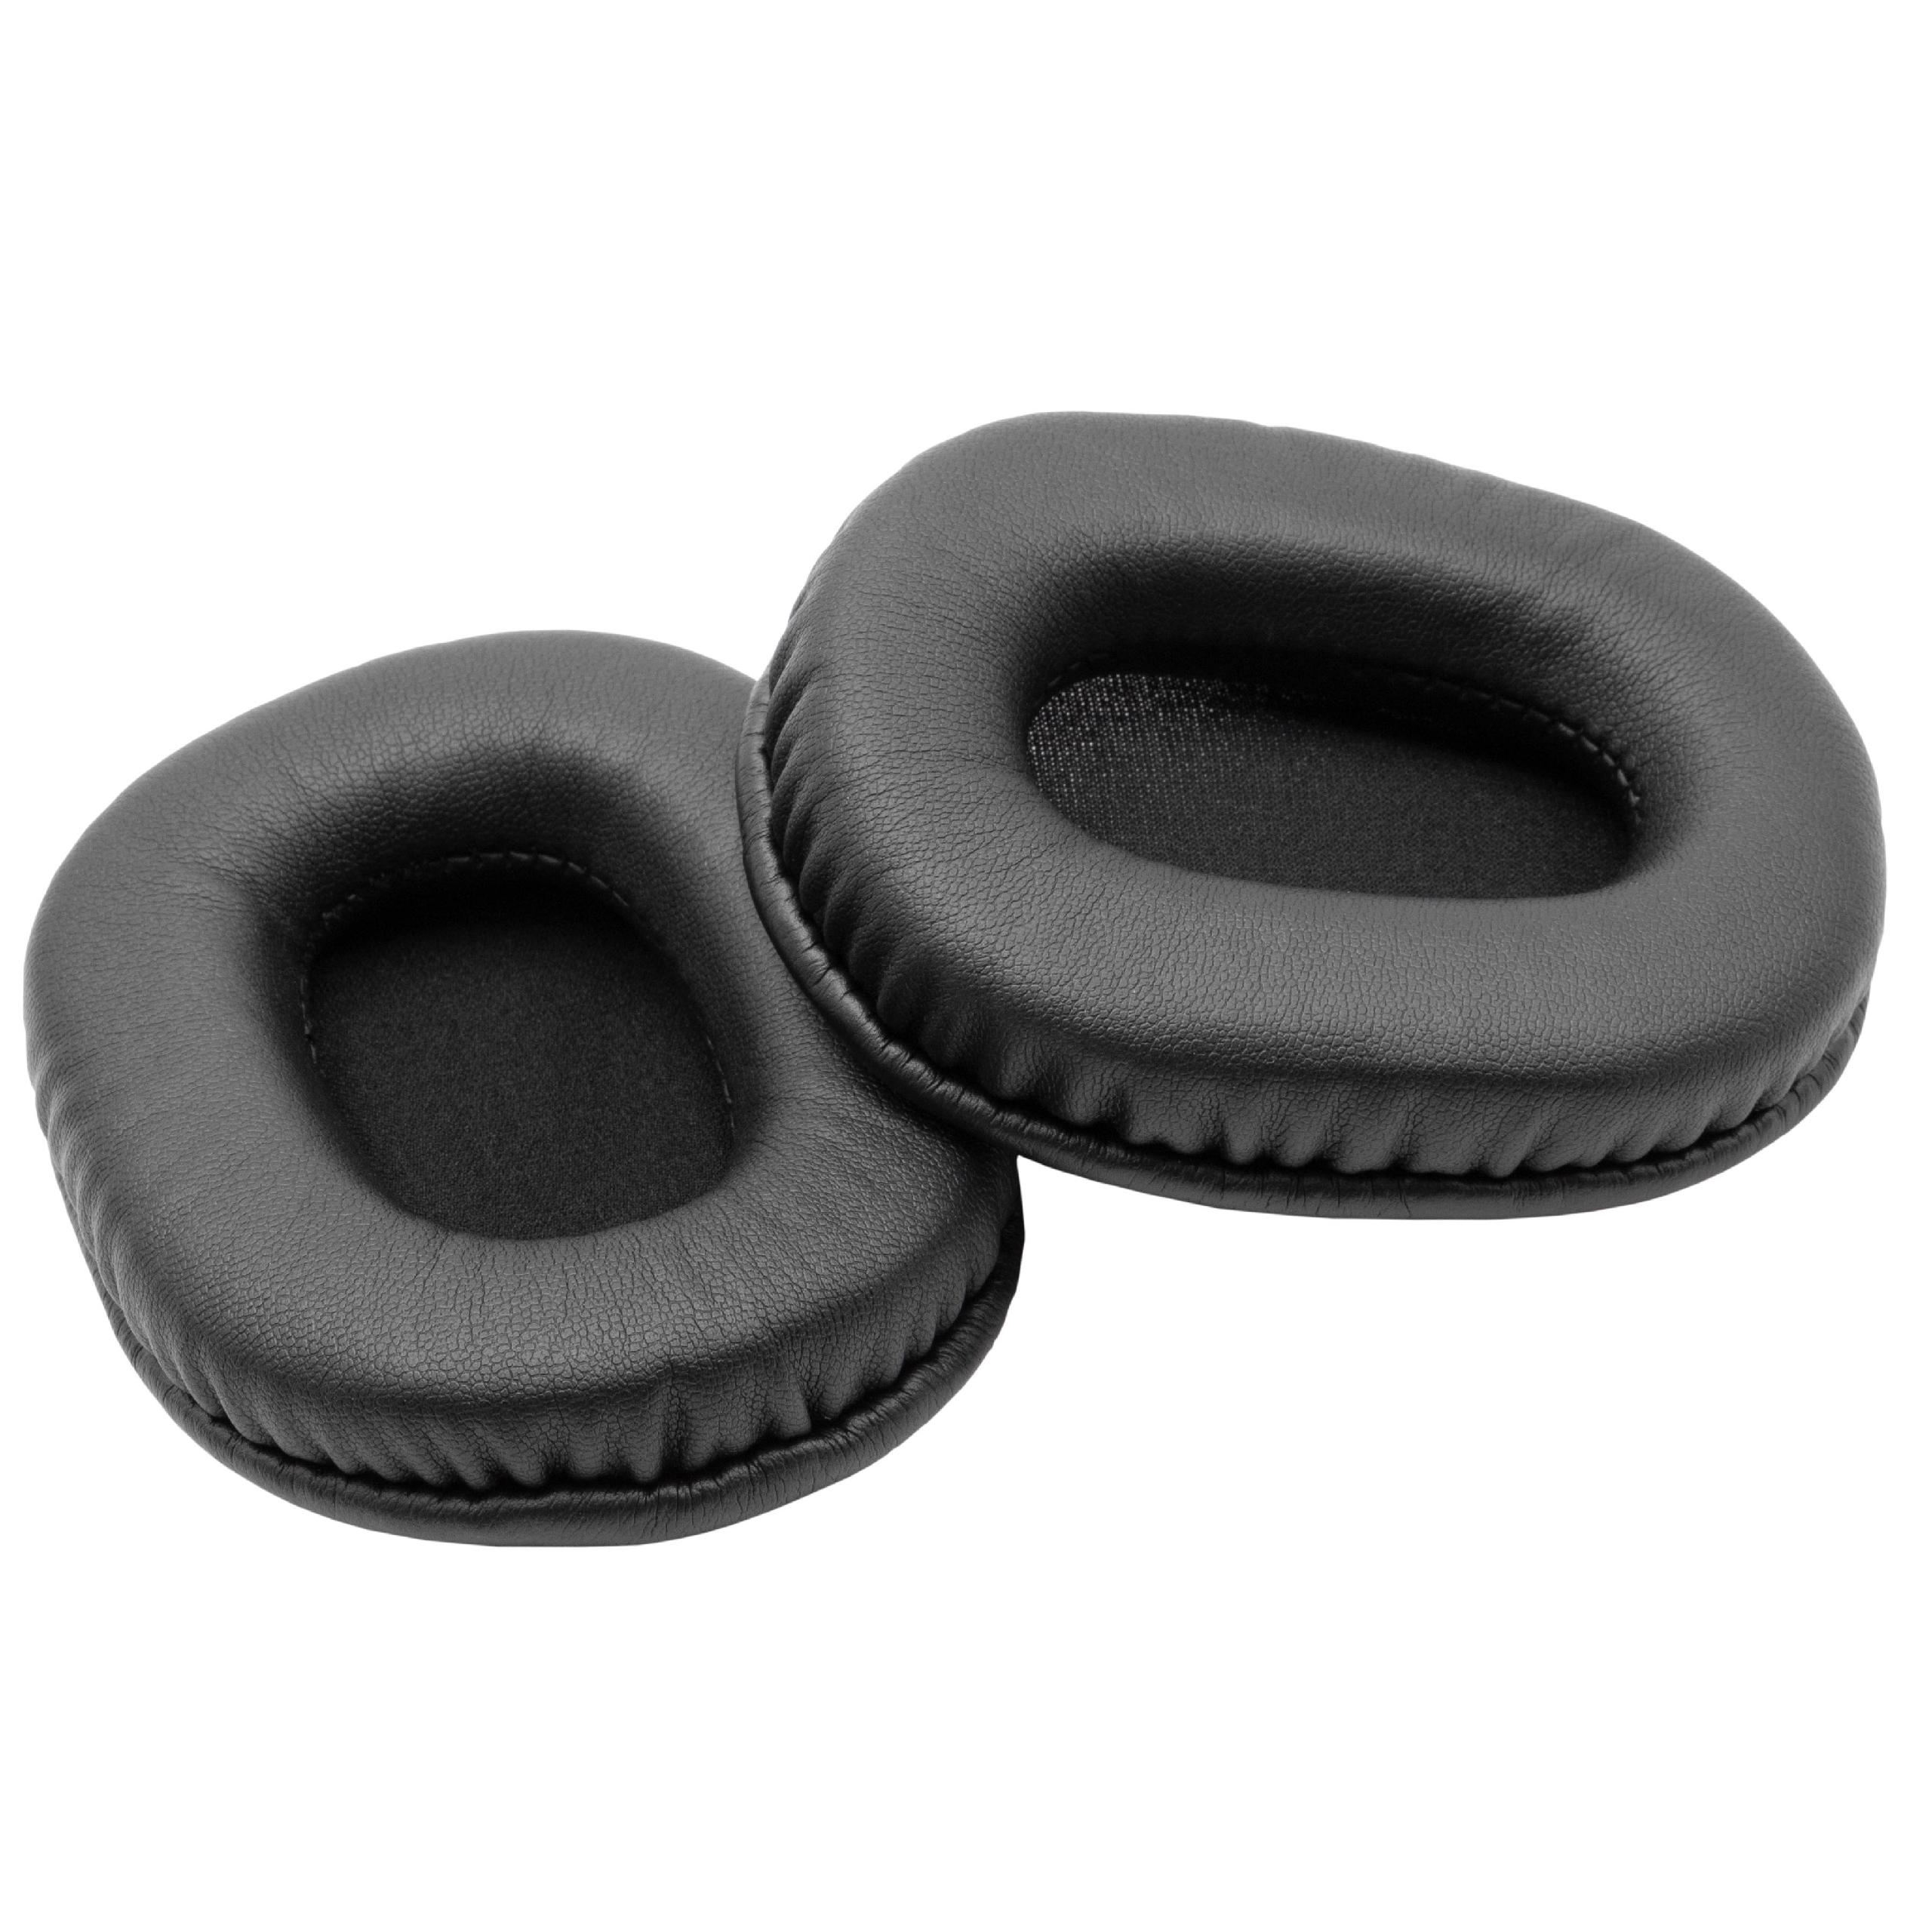 1 paio di cuscinetti per Audio Technica ATH-M20 cuffie ecc. - poliuretano / gommapiuma, 9,5 x 7,4 cm, 11 mm sp